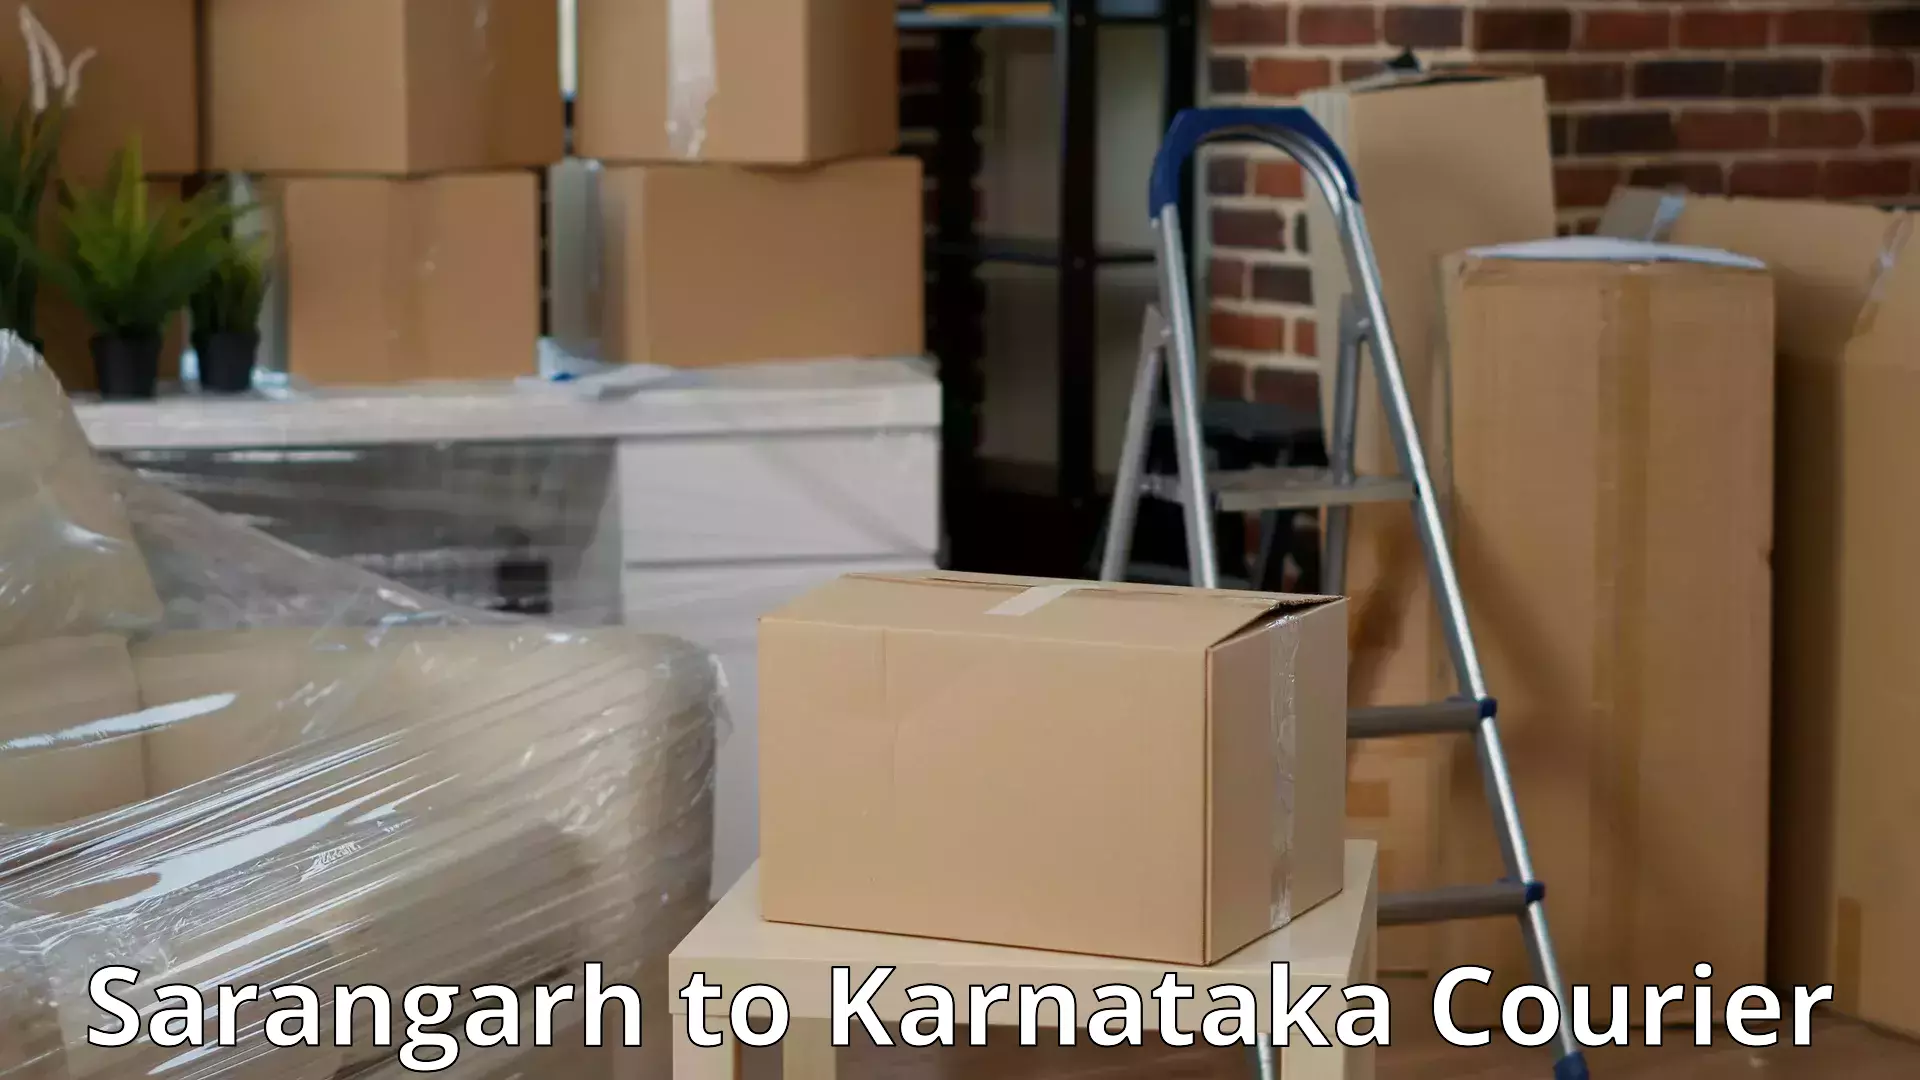 Expert goods movers Sarangarh to Yenepoya Mangalore